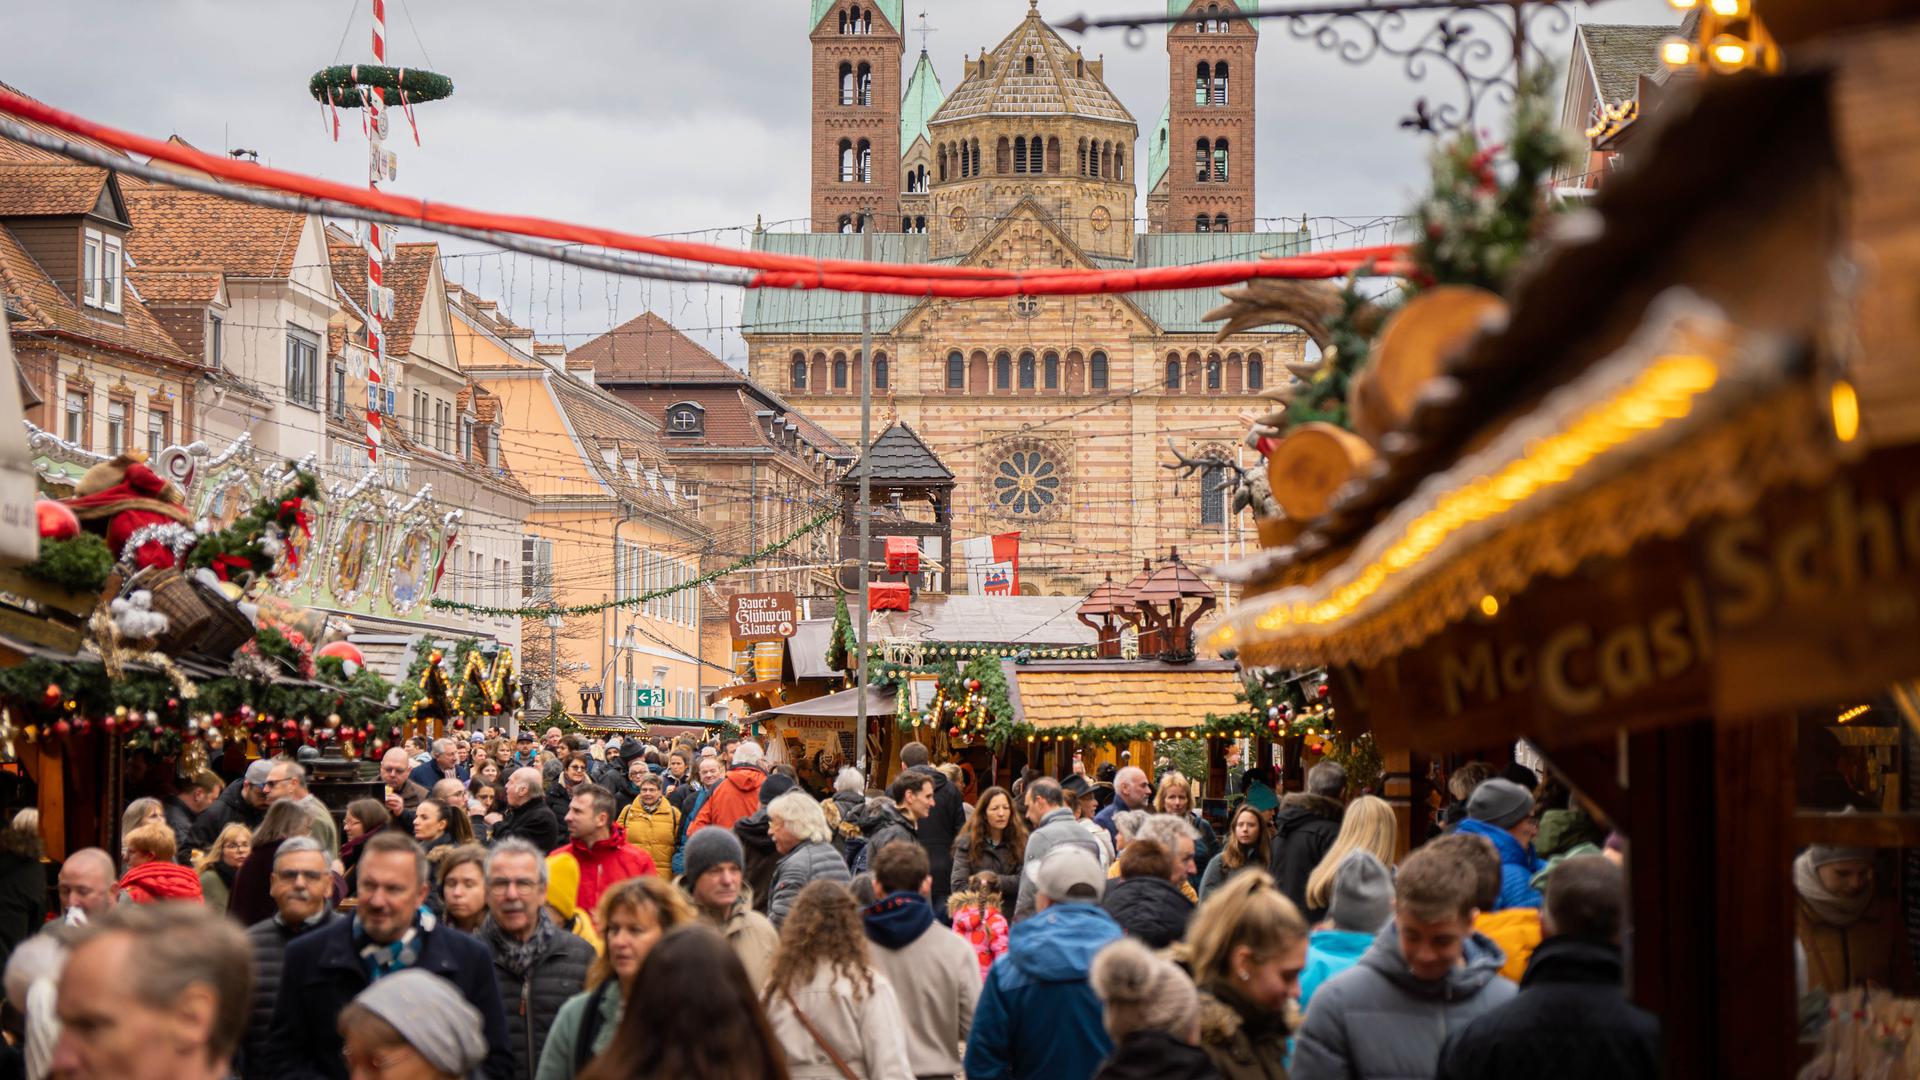 Zum Bummel nach Speyer: Viele Badner nutzten den Feiertag für einen letzten Besuch auf dem Neujahrsmarkt in der Altstadt. Auf der Straße staute sich der Verkehr.